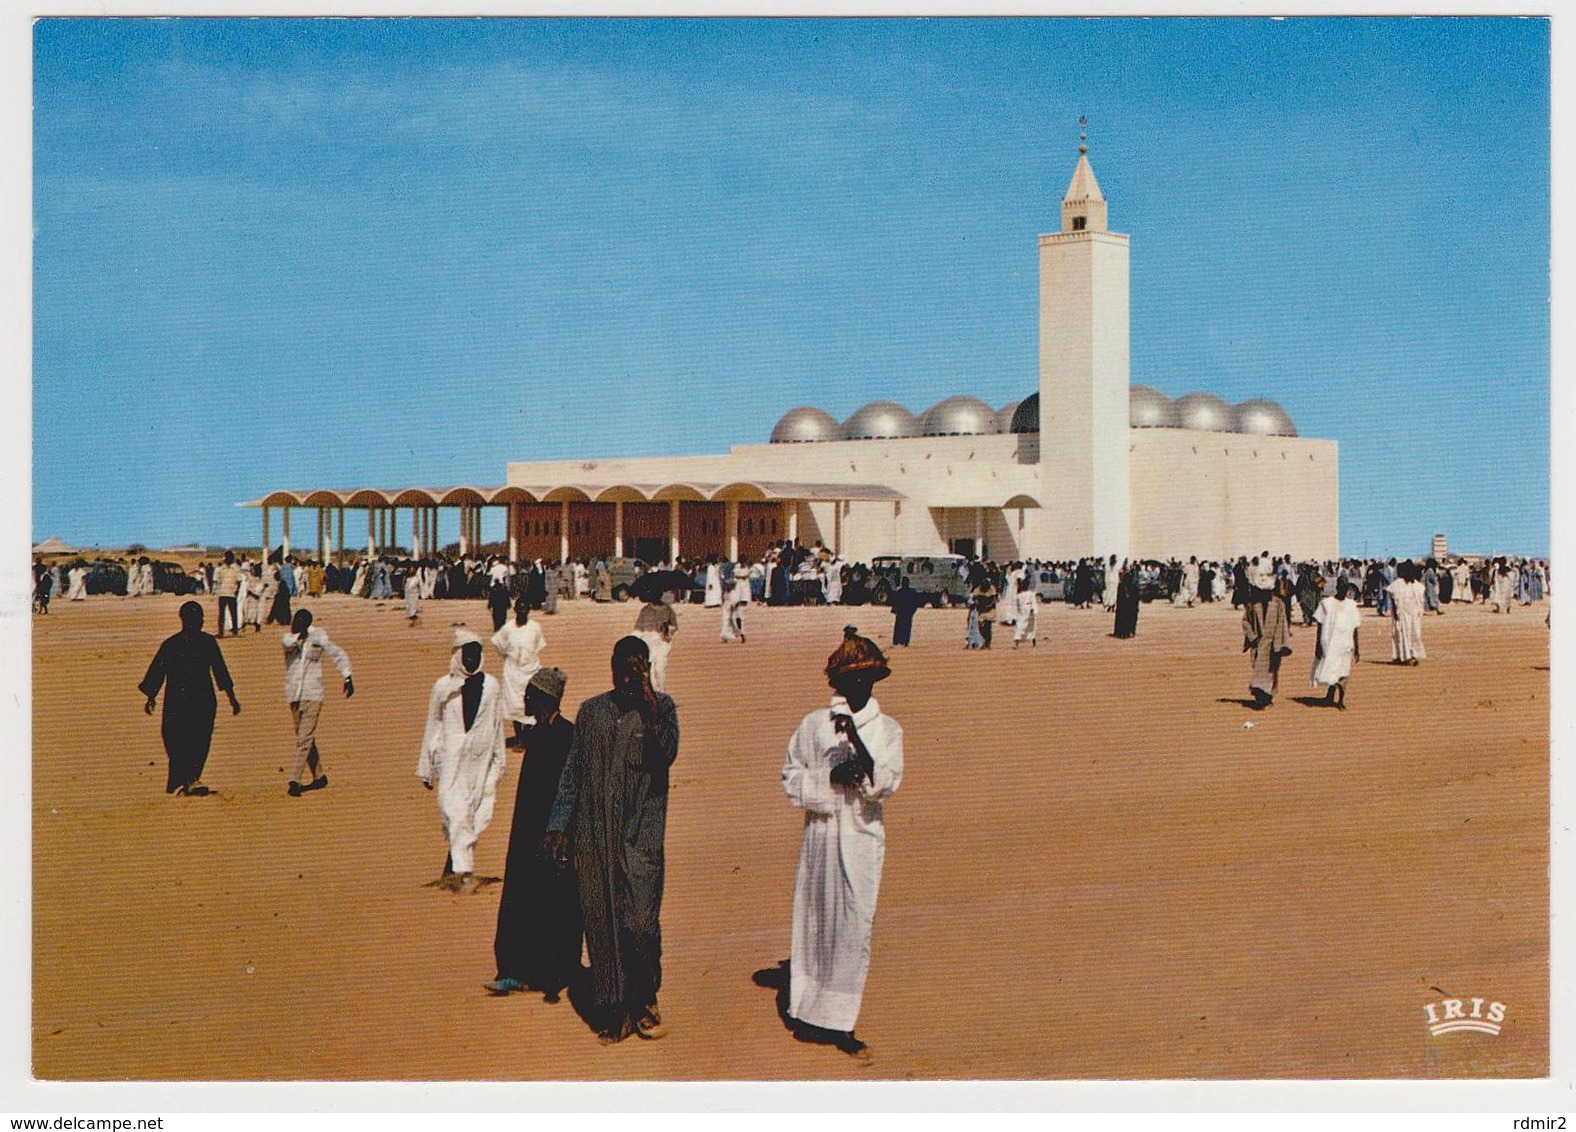 1786/ NOUAKCHOTT, Mauritanie. Mosquée / Mosque. - Non écrite. Unused. No Escrita. Non Scritta. Ungelaufen. - Mauritania